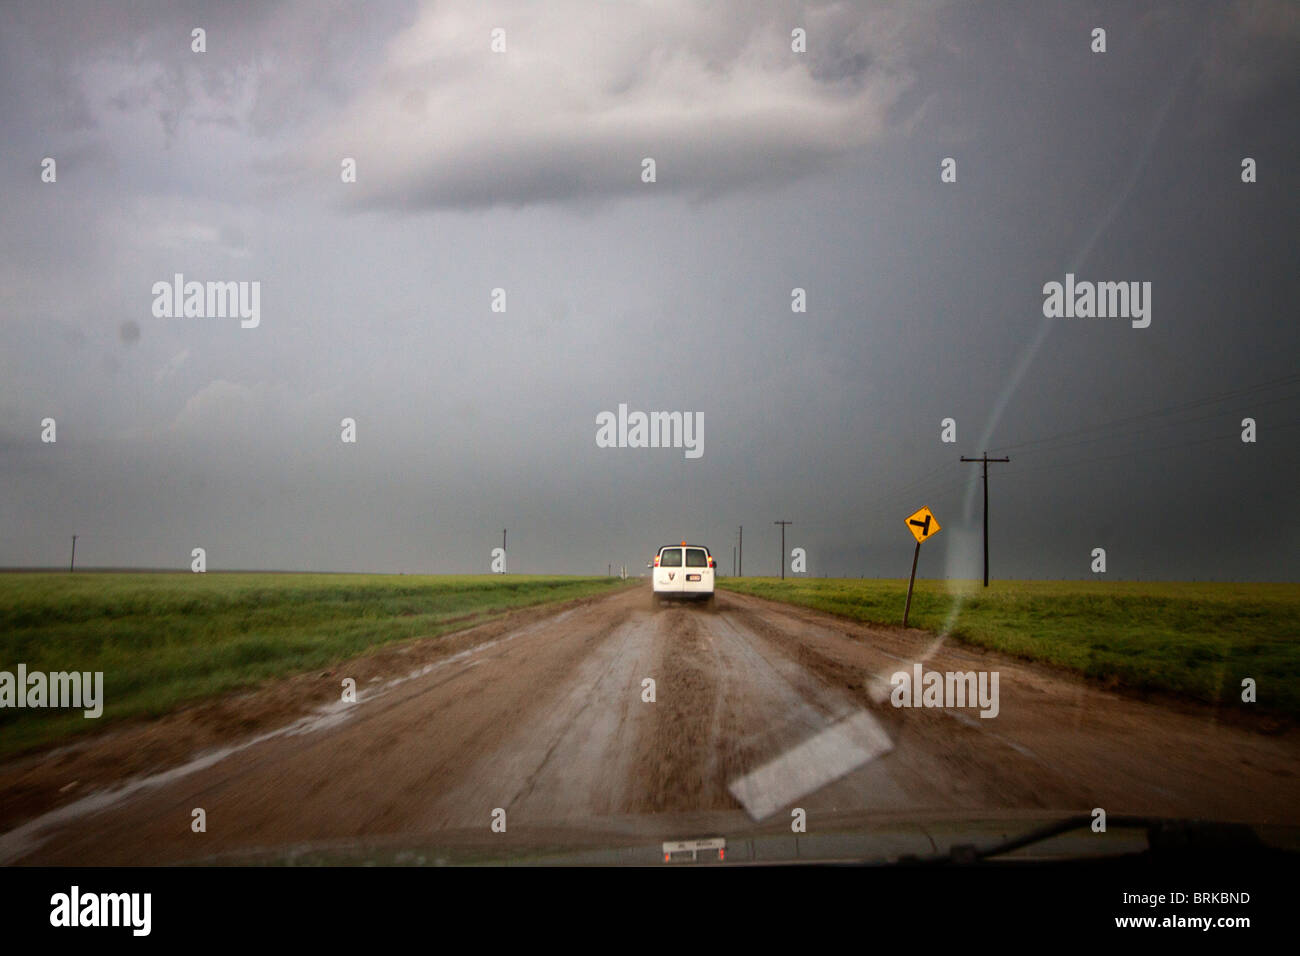 Zeigen Sie er schuftet durch tiefen Schlamm während eines Gewitters in Kansas, 23. Mai 2010 Form dem Armaturenbrett des Fahrzeugs eine Storm Chaser an. Stockfoto